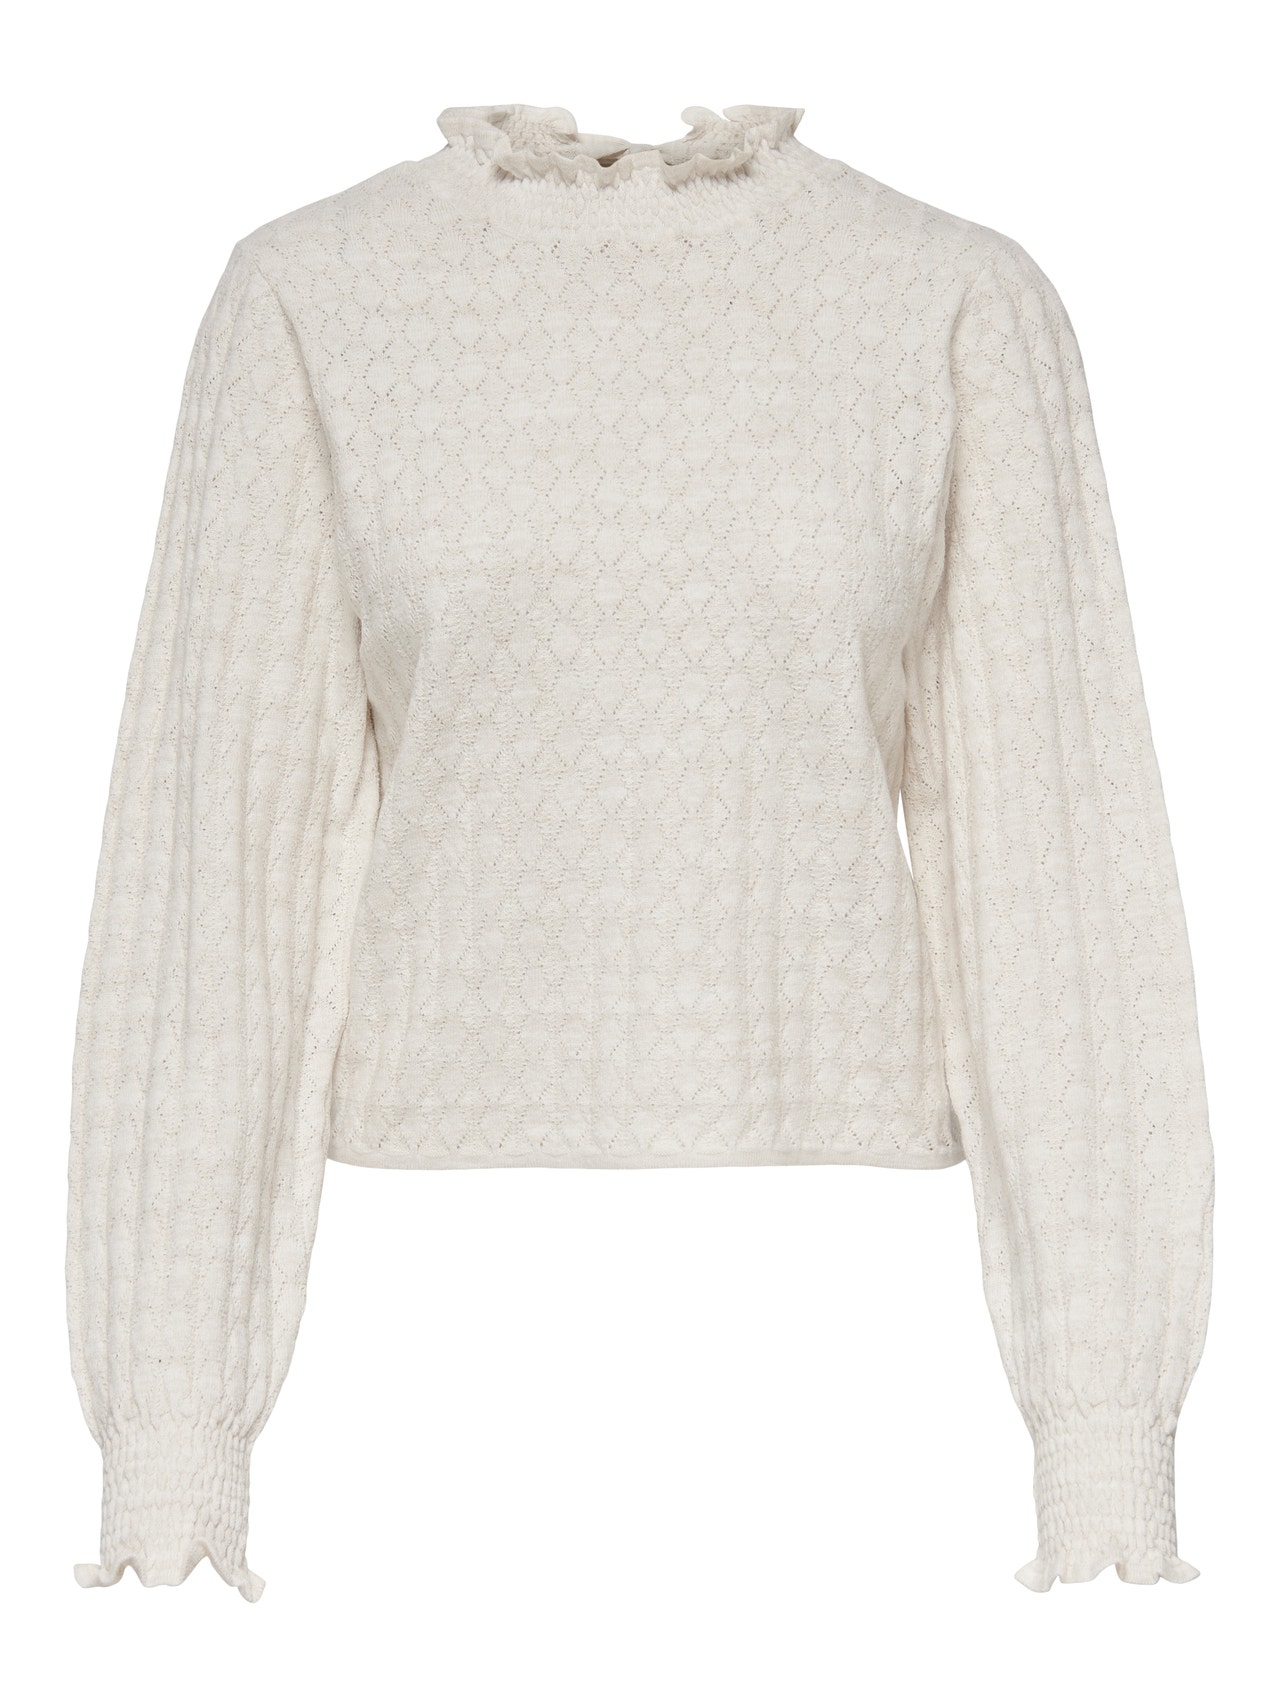 ONLY Ryggdetaljert Strikket pullover -Winter White - 15265738